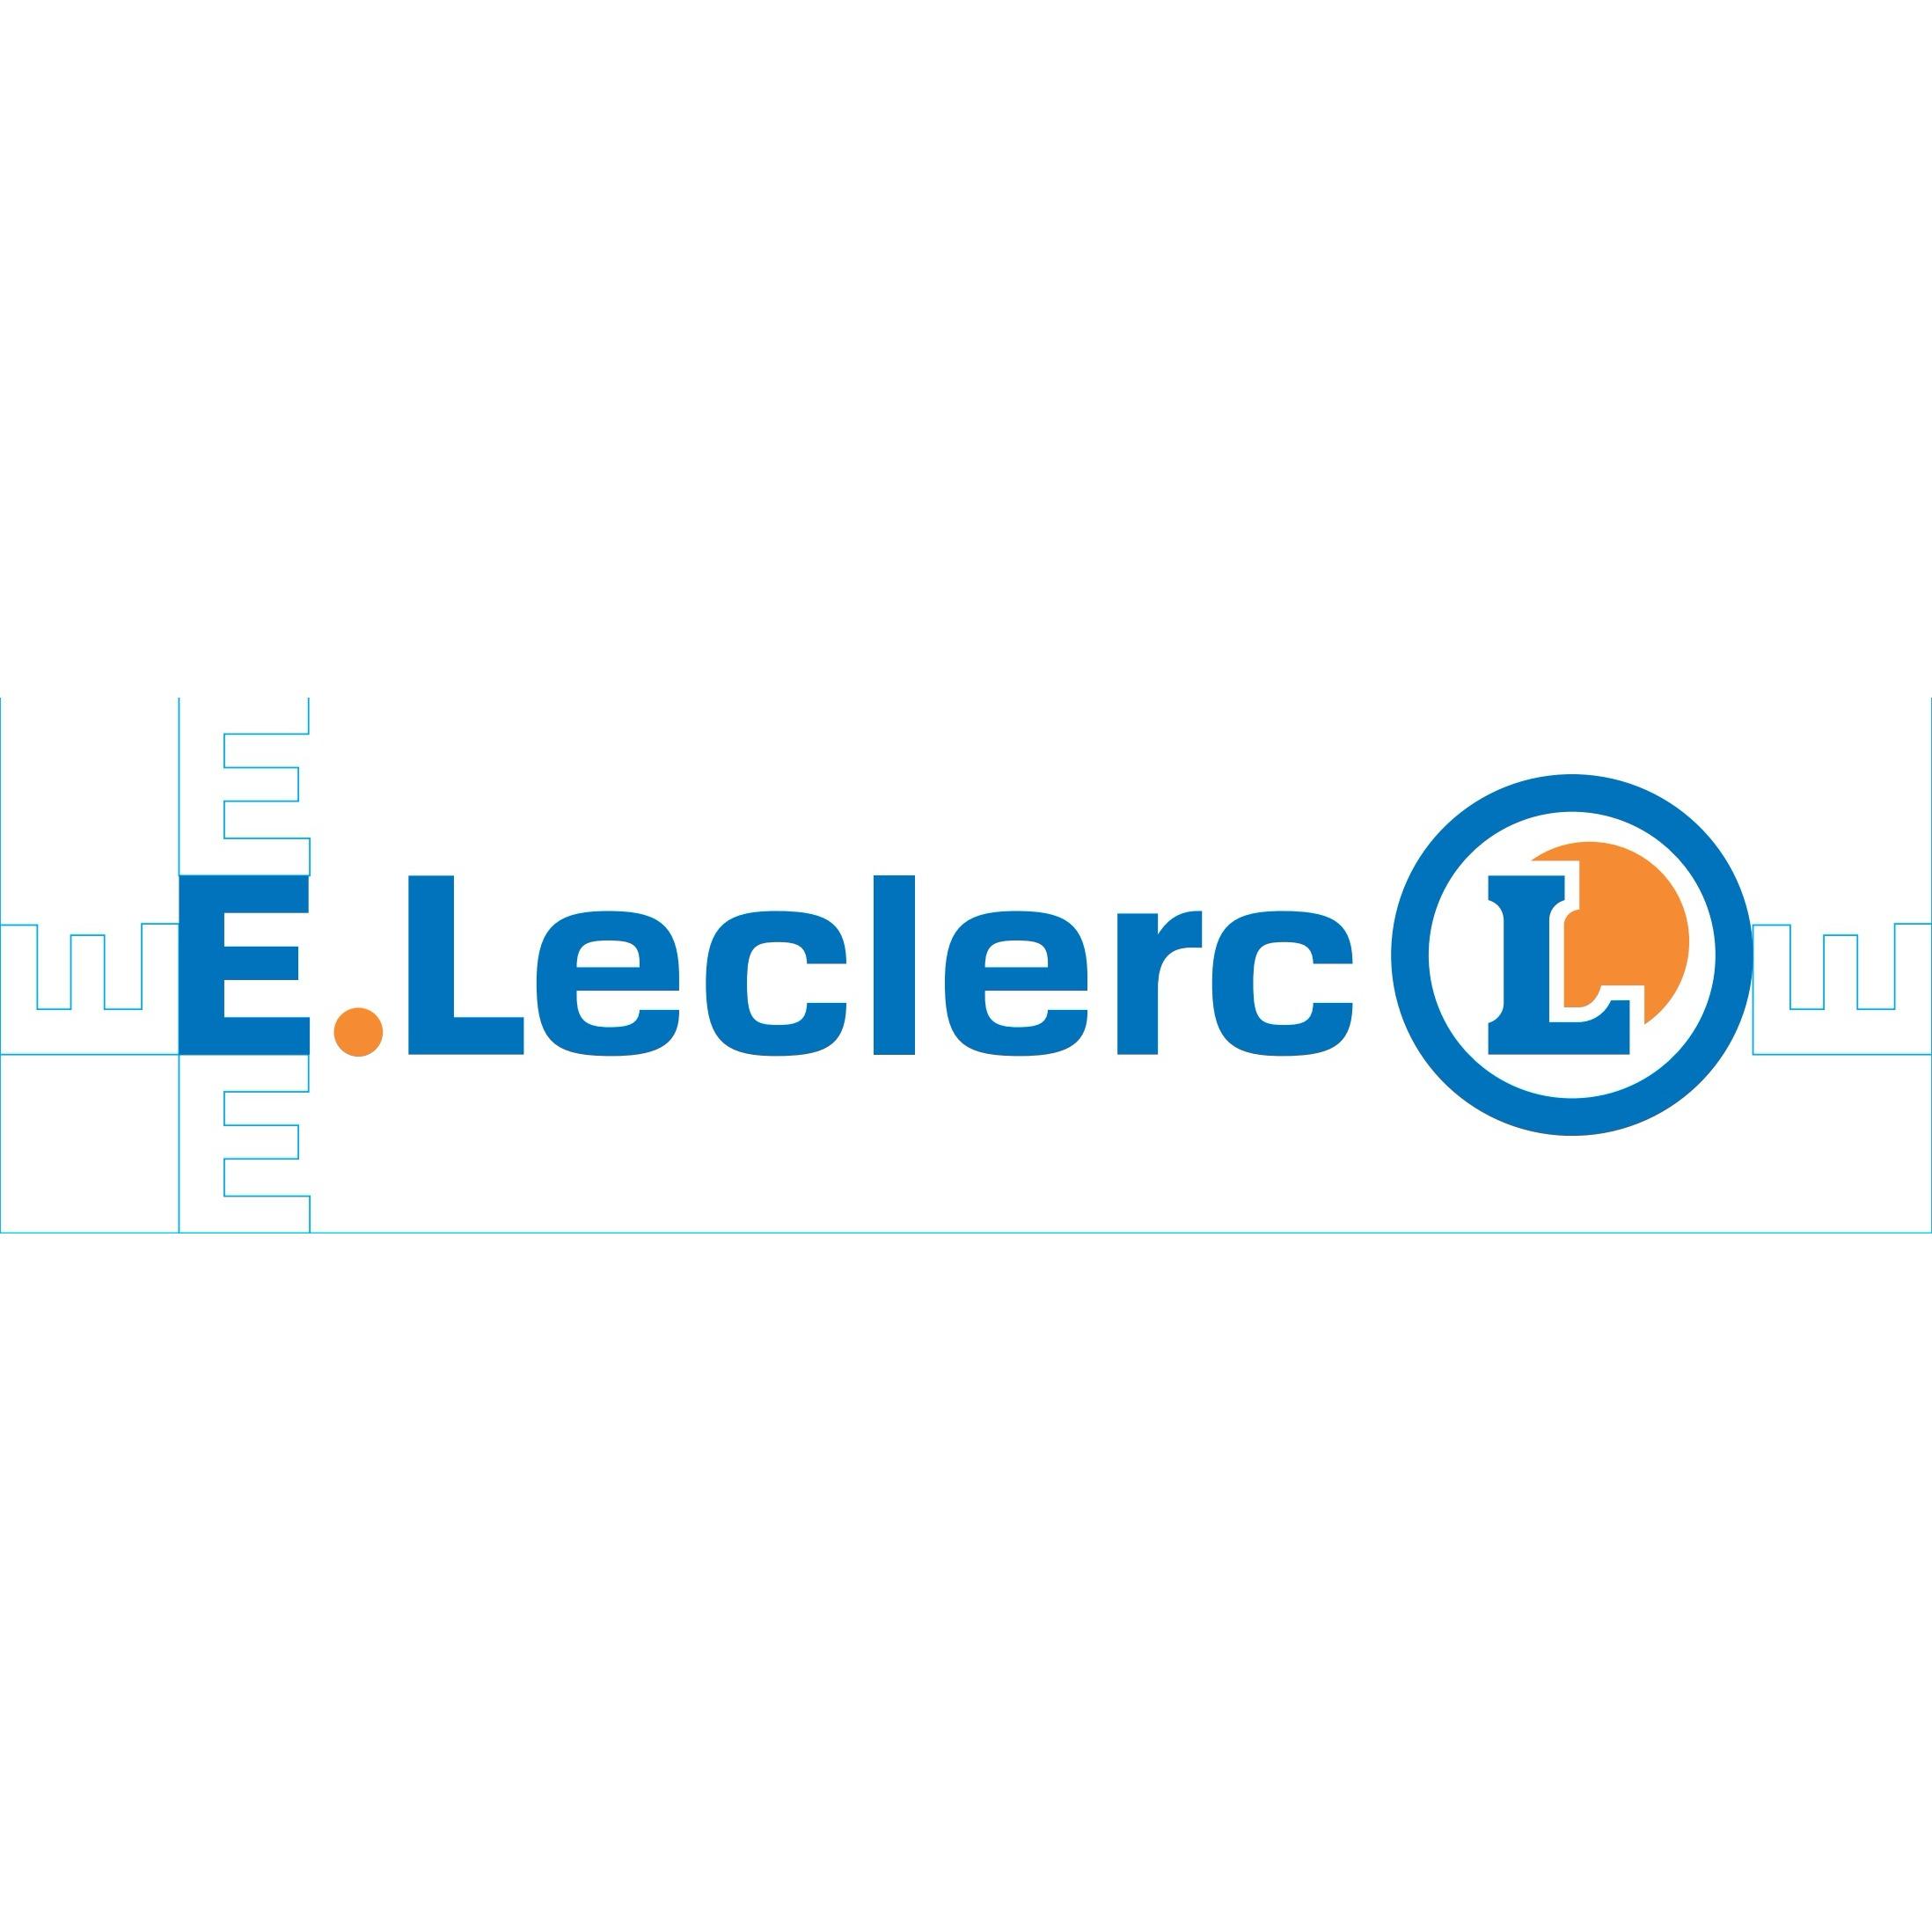 E.Leclerc La Teste épicerie (alimentation au détail)